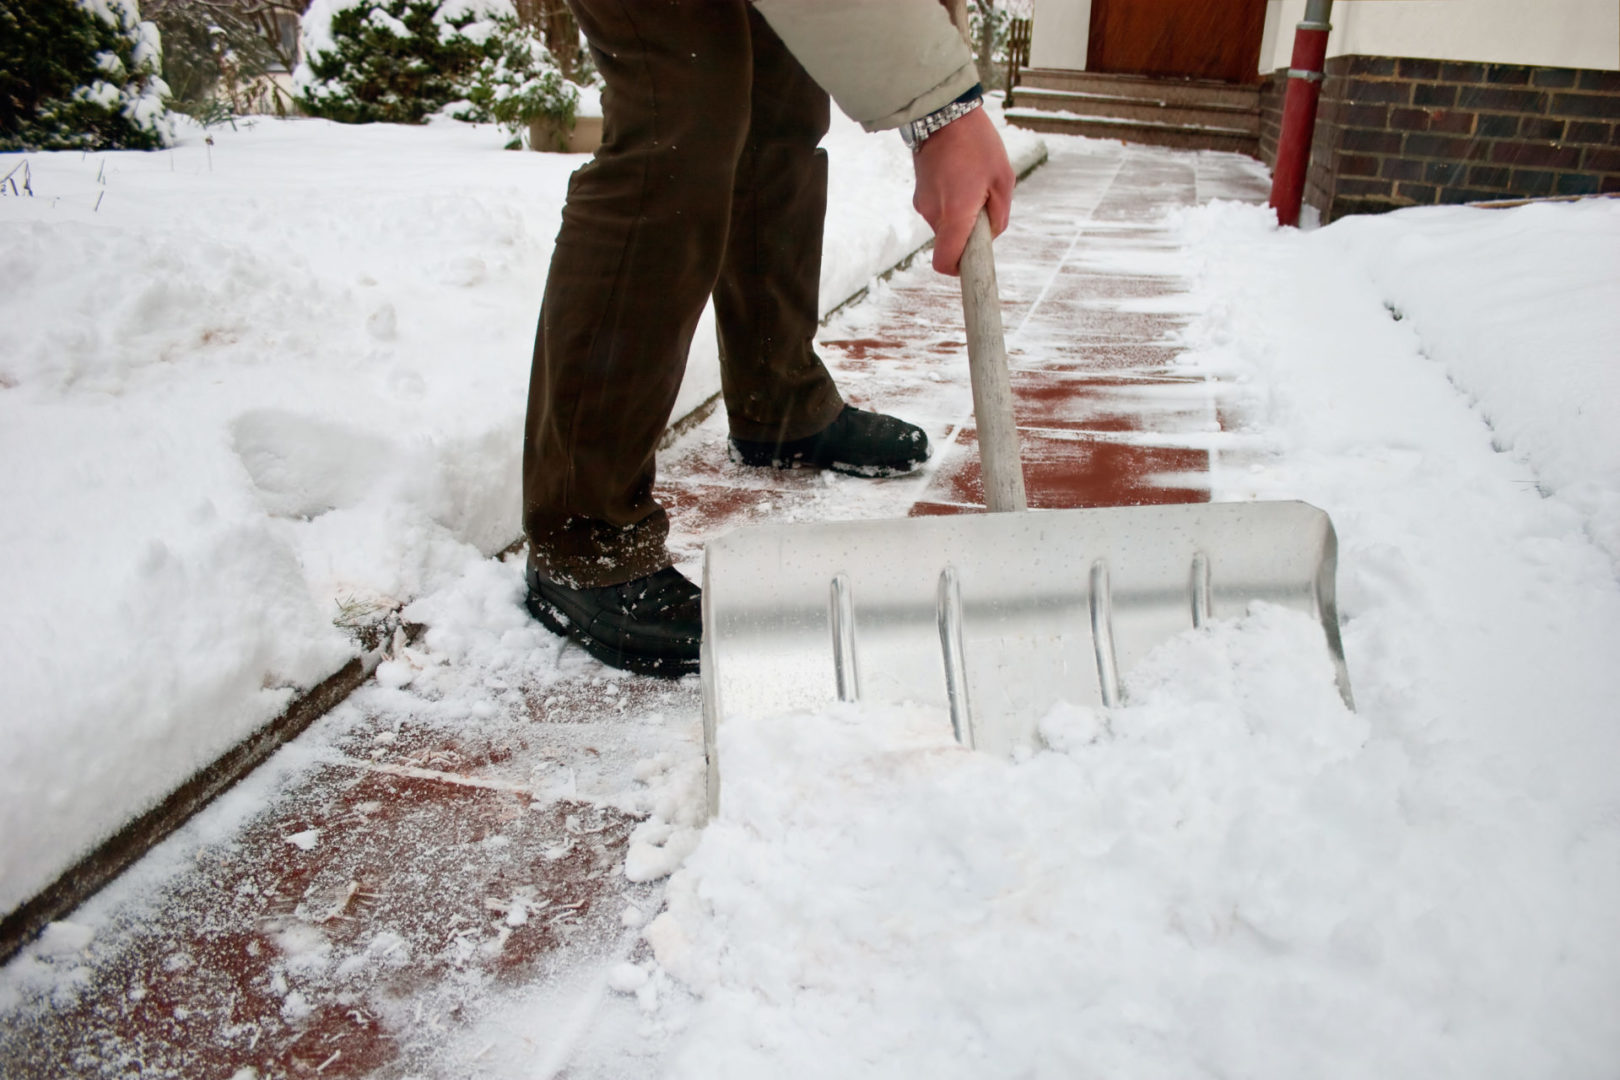 Snow, ice, salt, deice, snow removal, deicing, tips for snow removal, deice driveway, shoveling, shovel